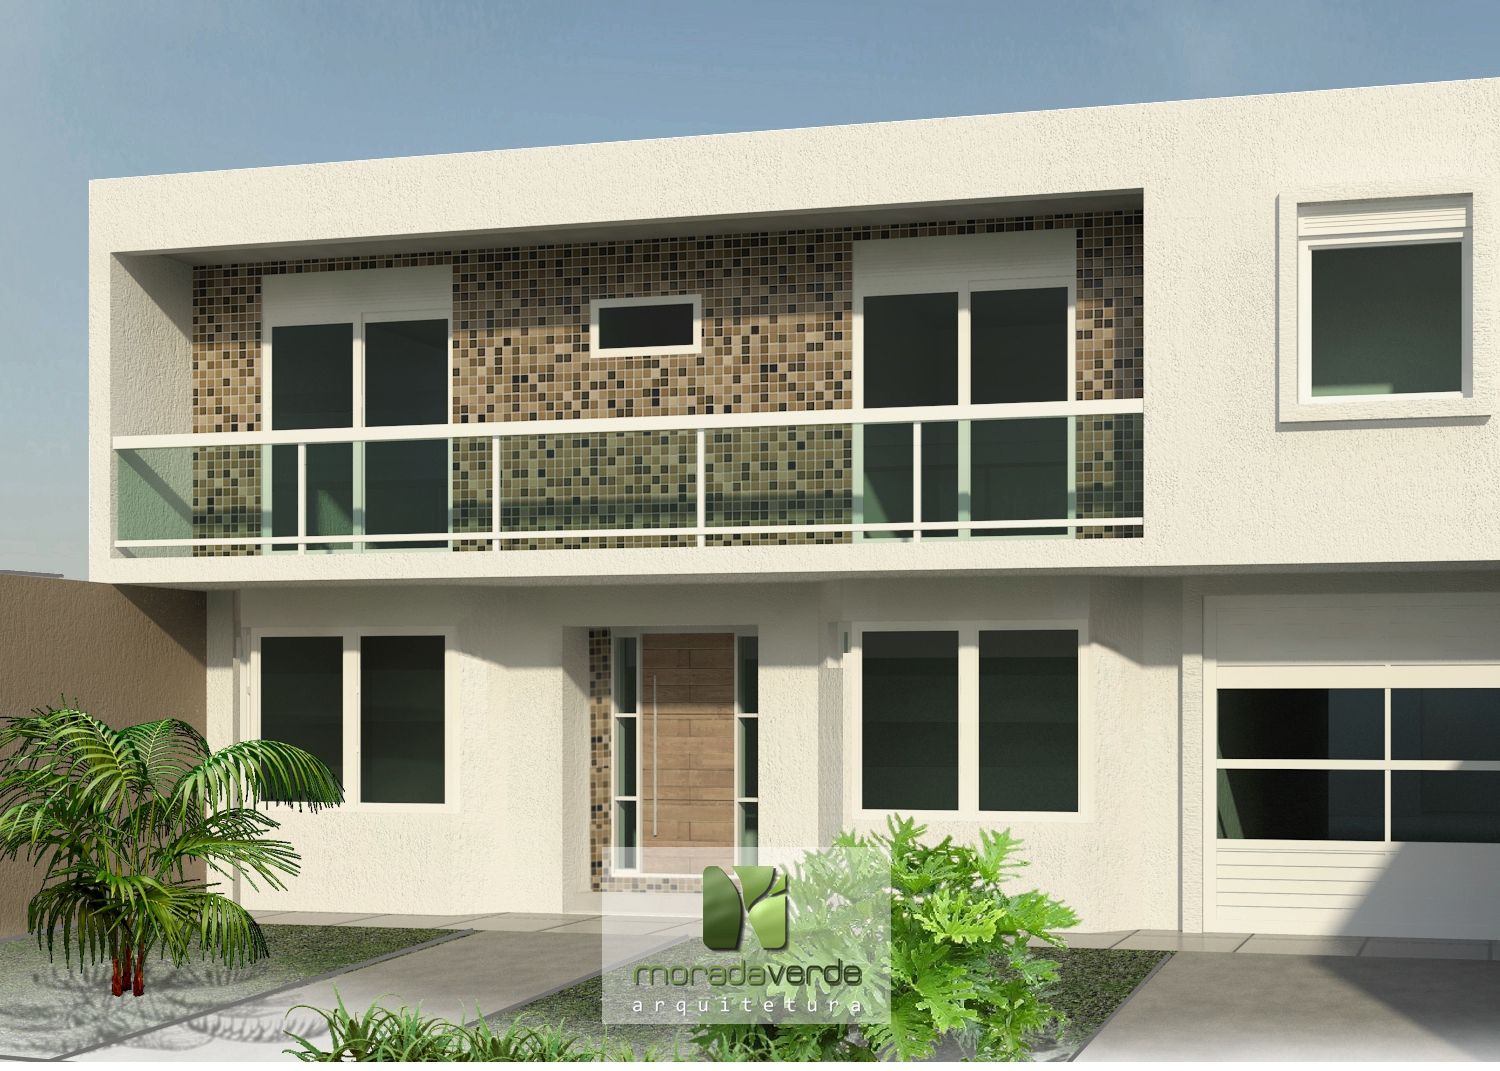 Projeto da fachada - Moradaverde arquitetura homify Casas modernas